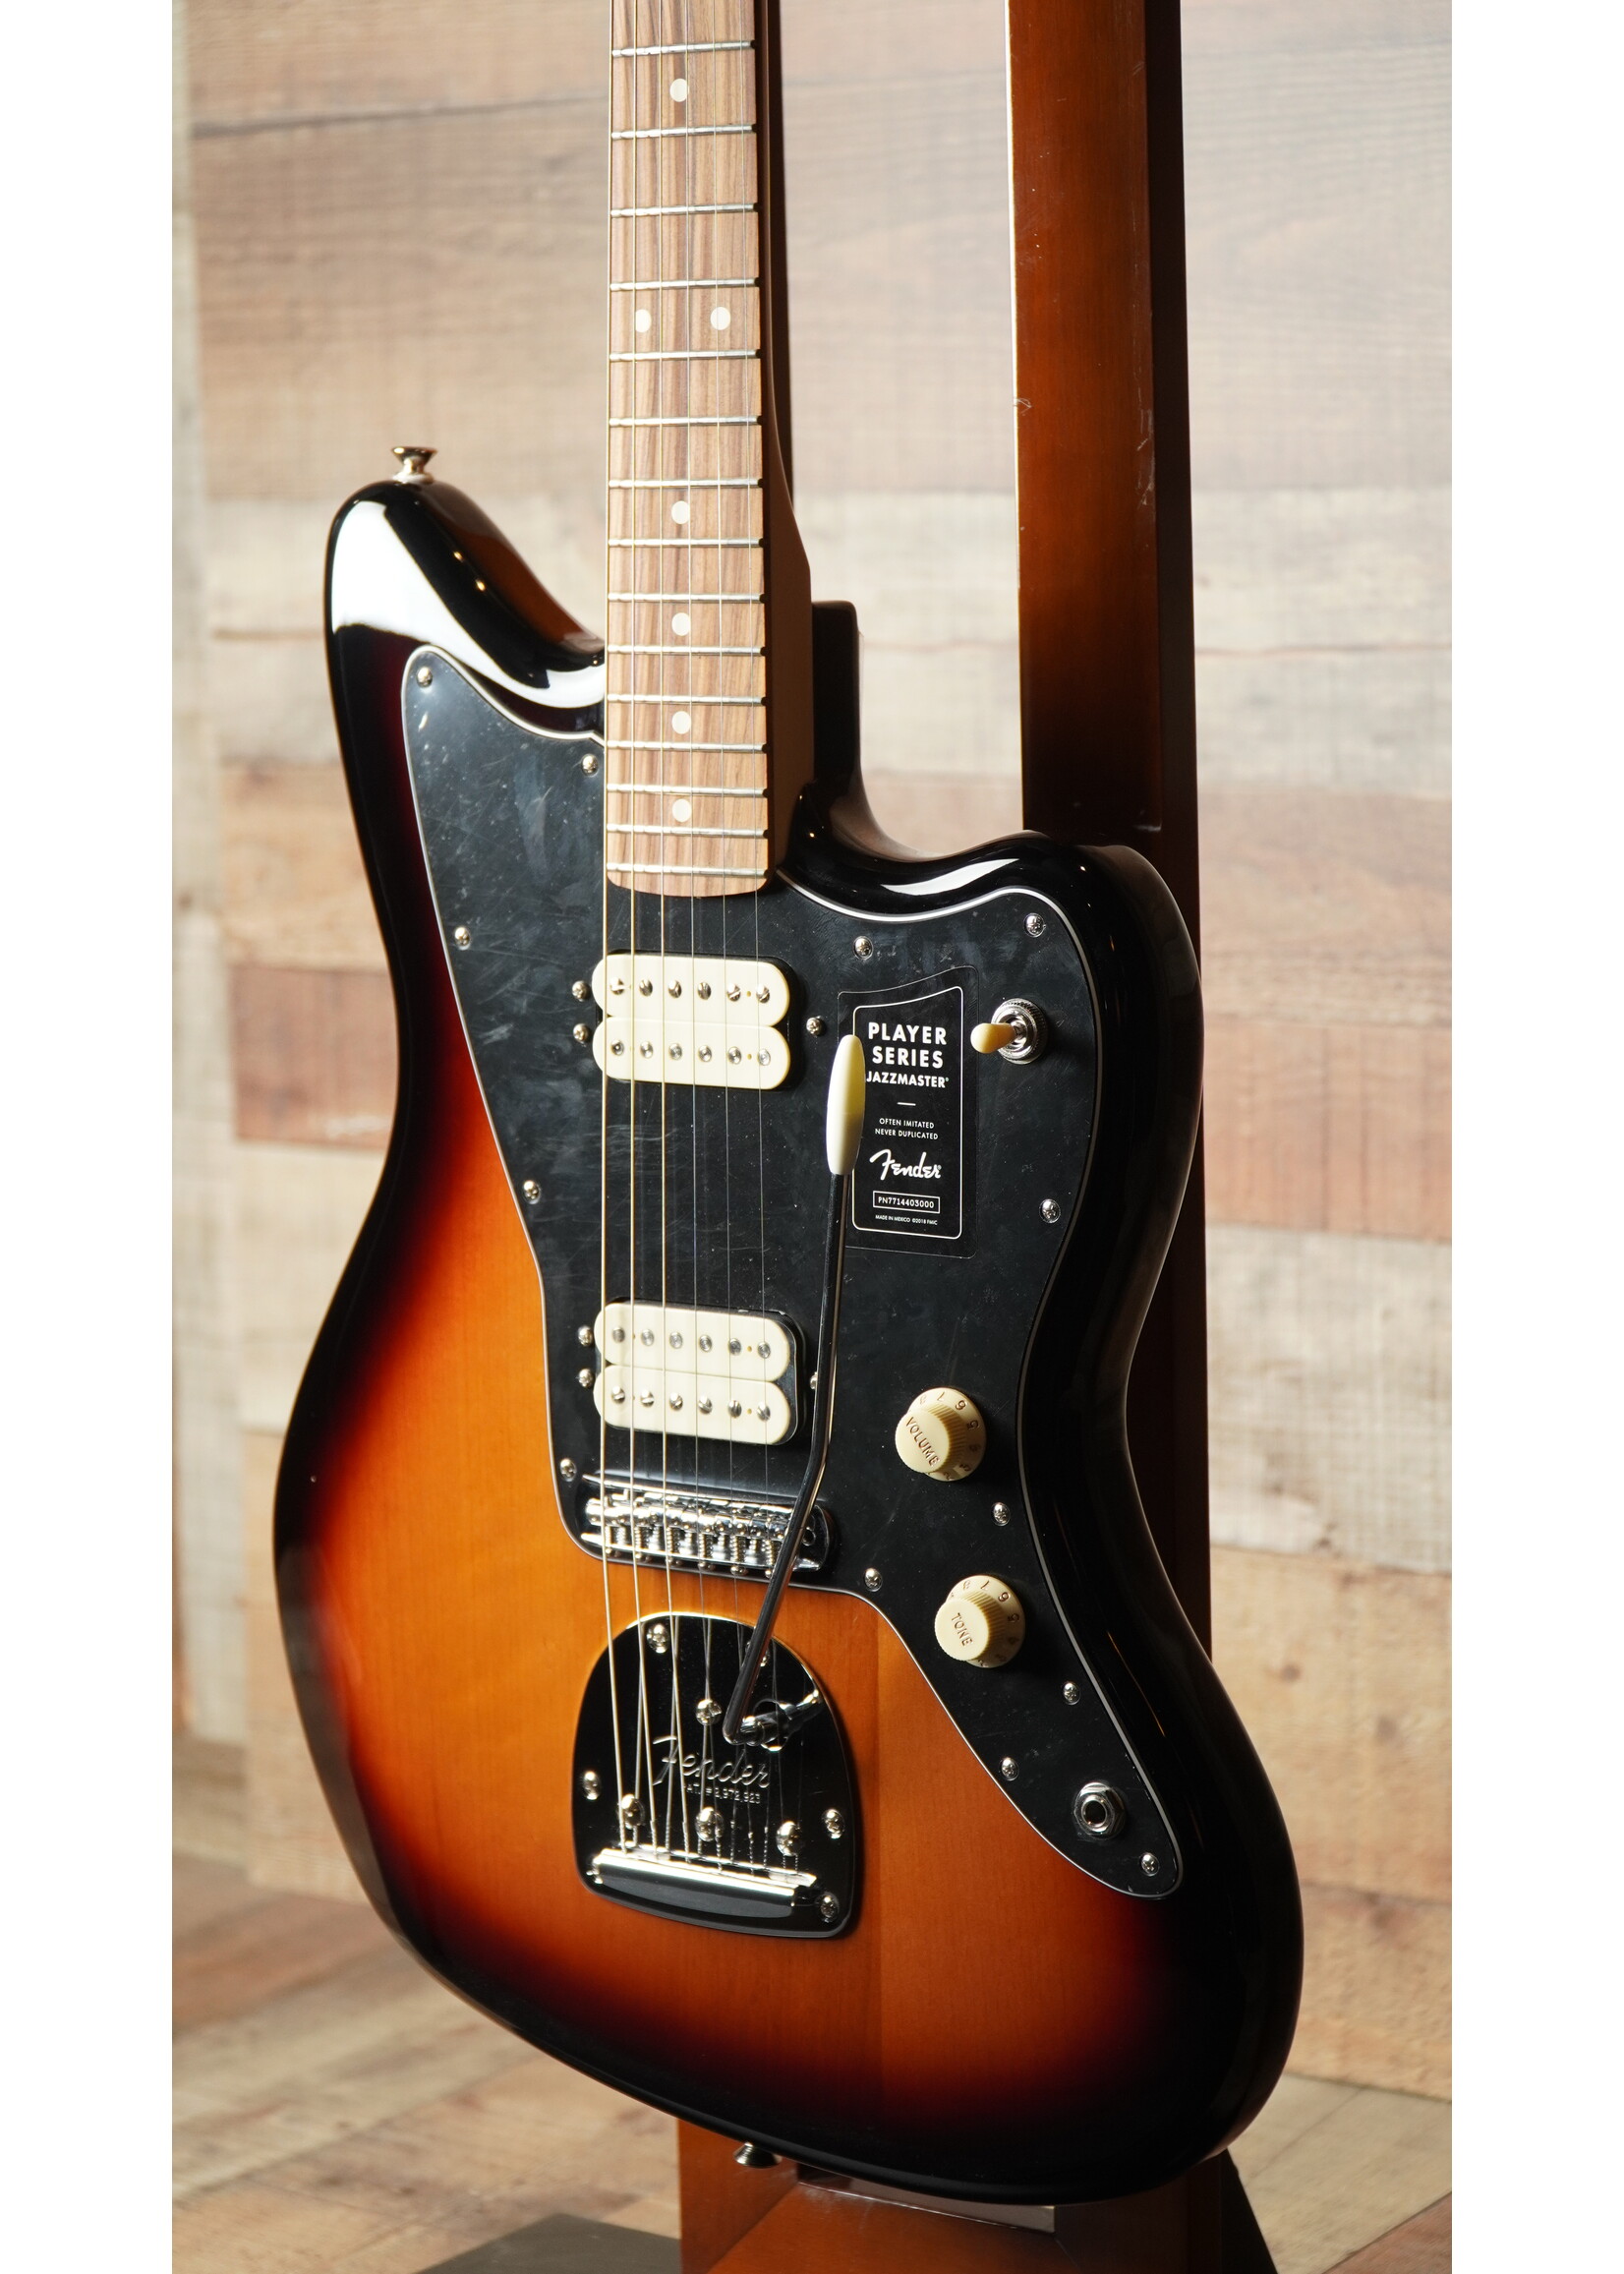 Fender Fender Player Series Jazzmaster Three Tone Sunburst